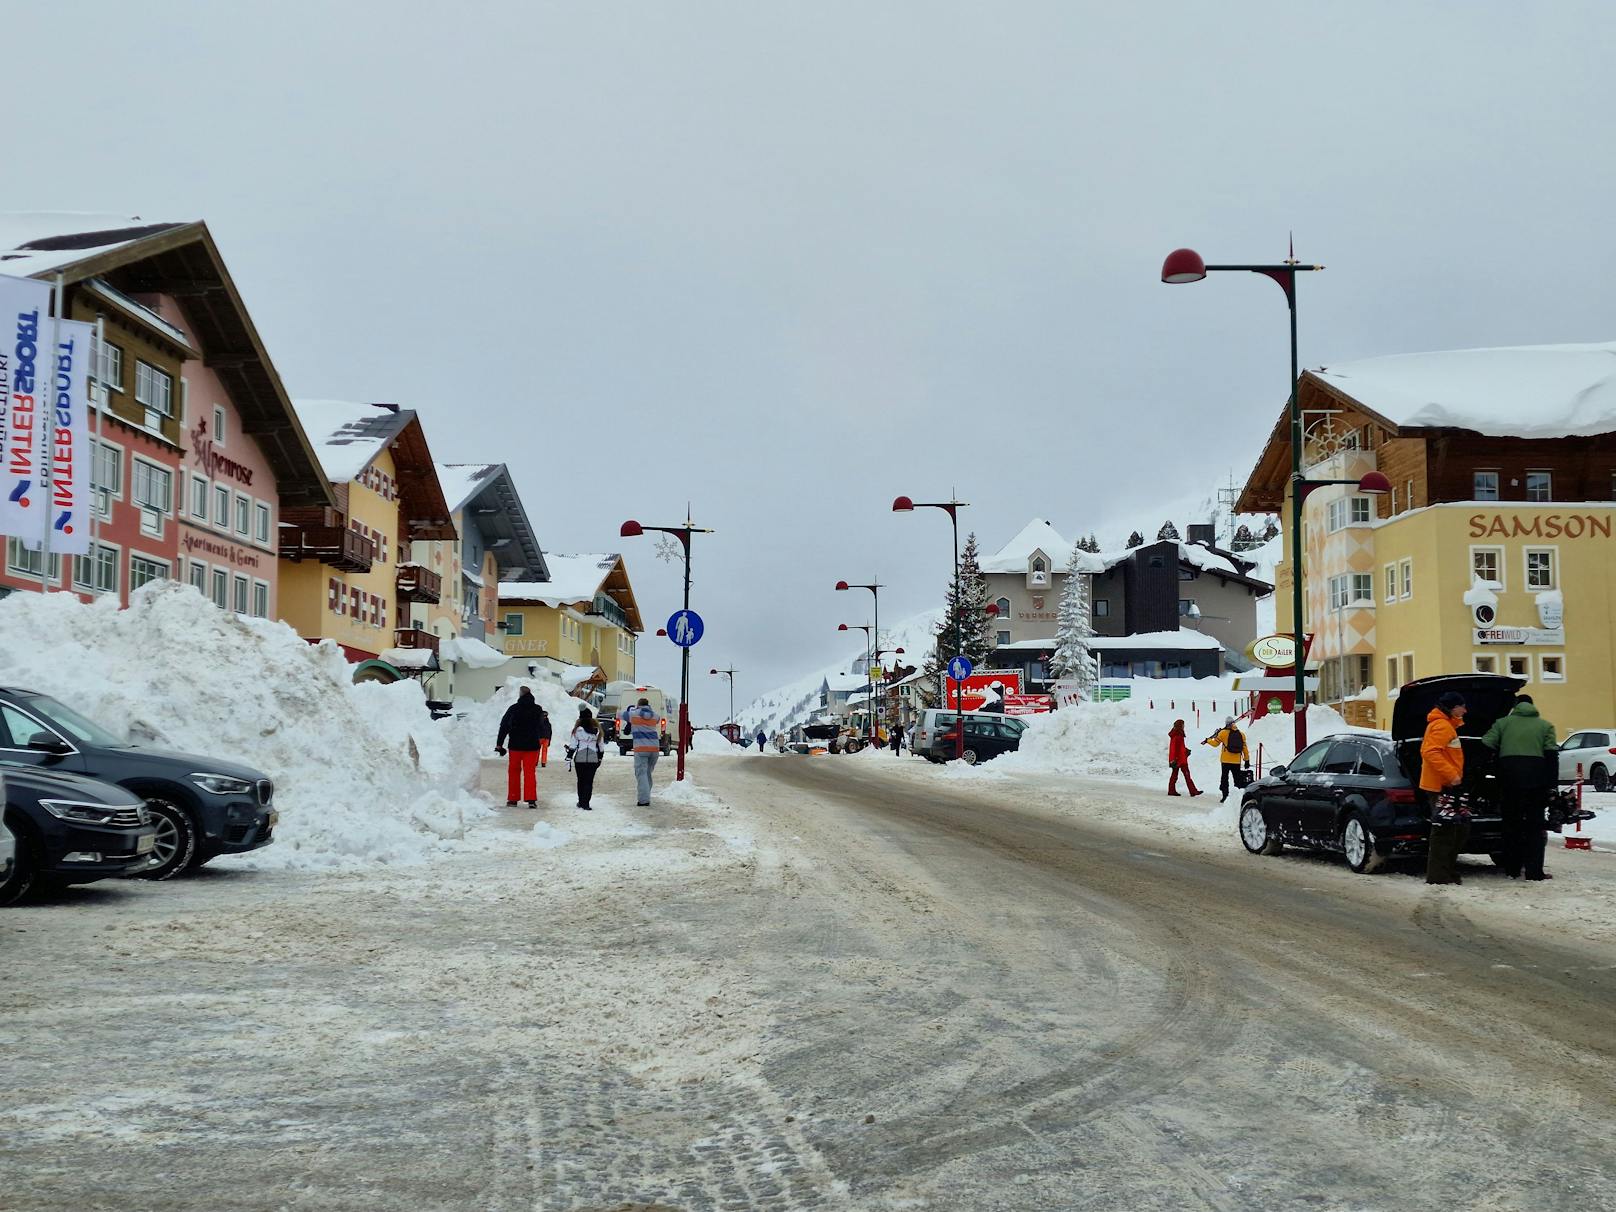 Die Schnee-Walze gepaart mit dem Orkan-Sturm sorgten in Obertauern, Salzburg, am 3. Februar 2023 für massive Schneeverwehungen und laut Augenzeugen "blizzardähnliche Verhältnisse".